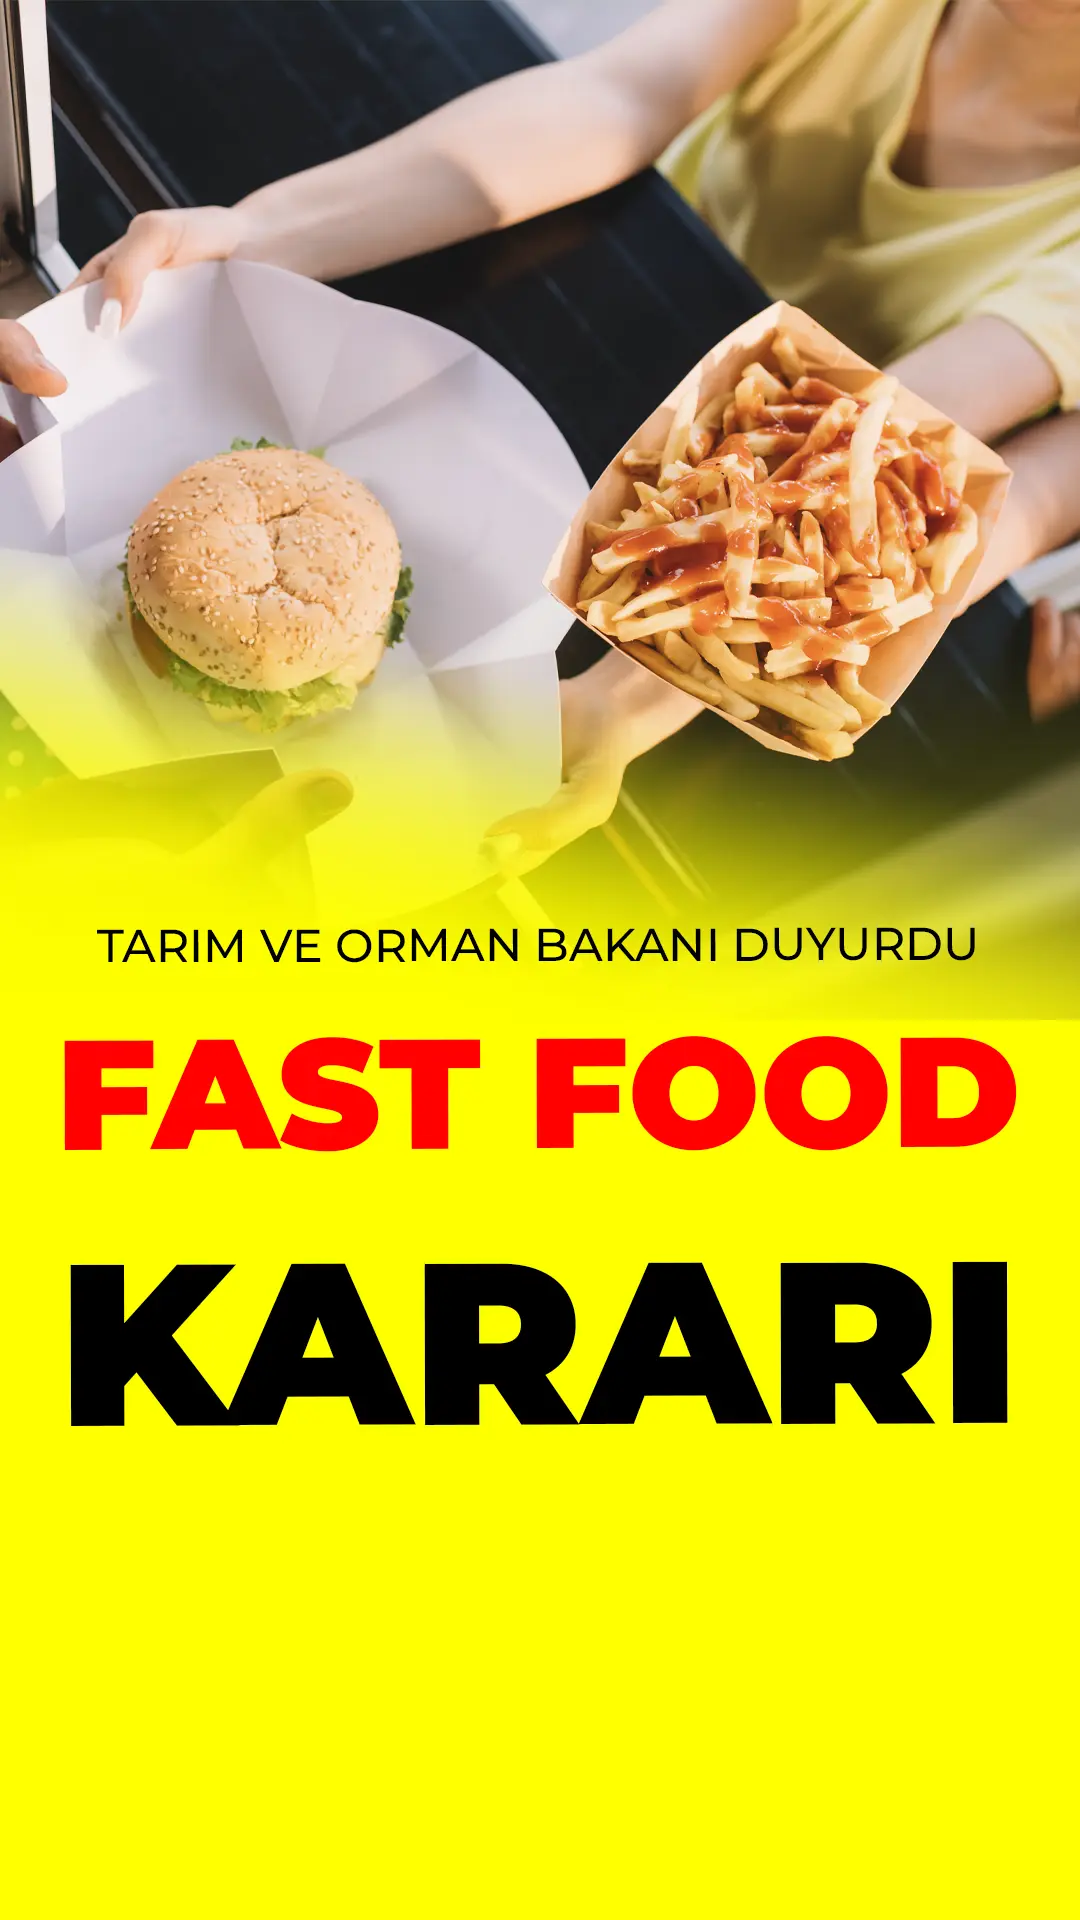 Tarım ve Orman Bakanı İbrahim Yumaklı, fast food işletmelerinde kullanılan kızartma yağlarına yönelik Türkiye genelinde 10 günlük özel denetimlerin başladığını açıkladı.